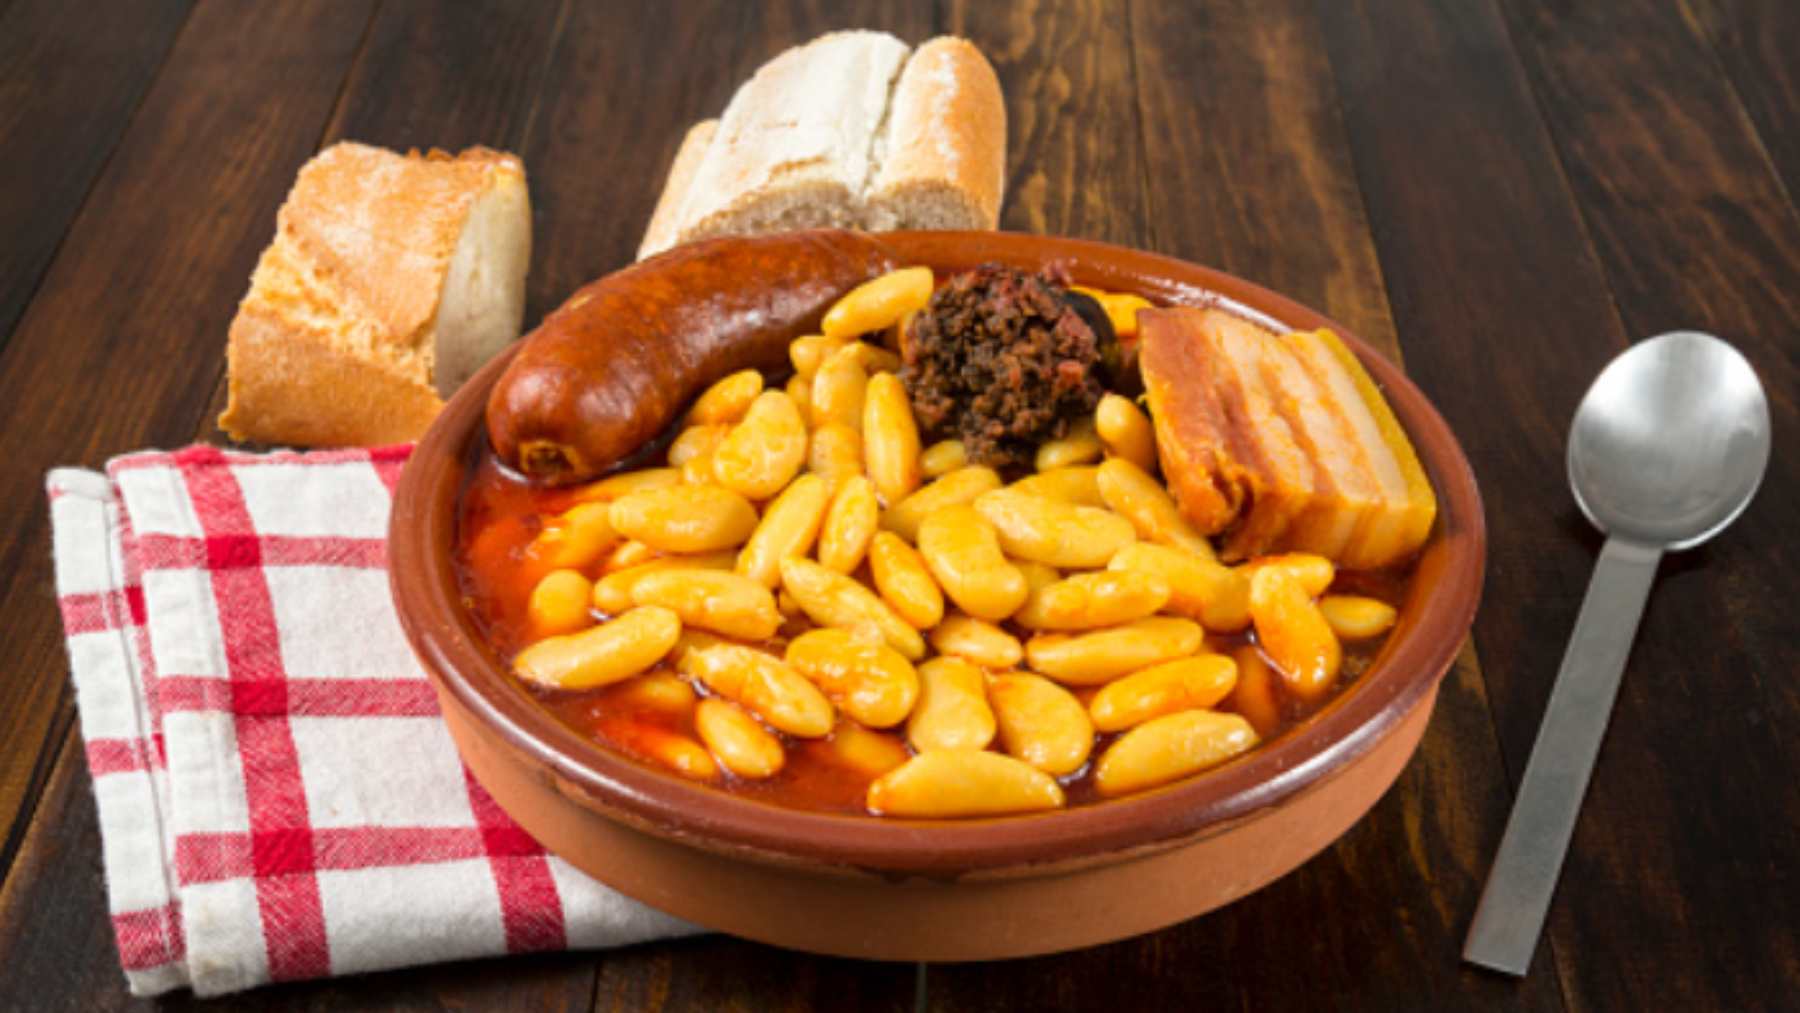 Los platos, comidas y alimentos más típicos y ricos de Asturias